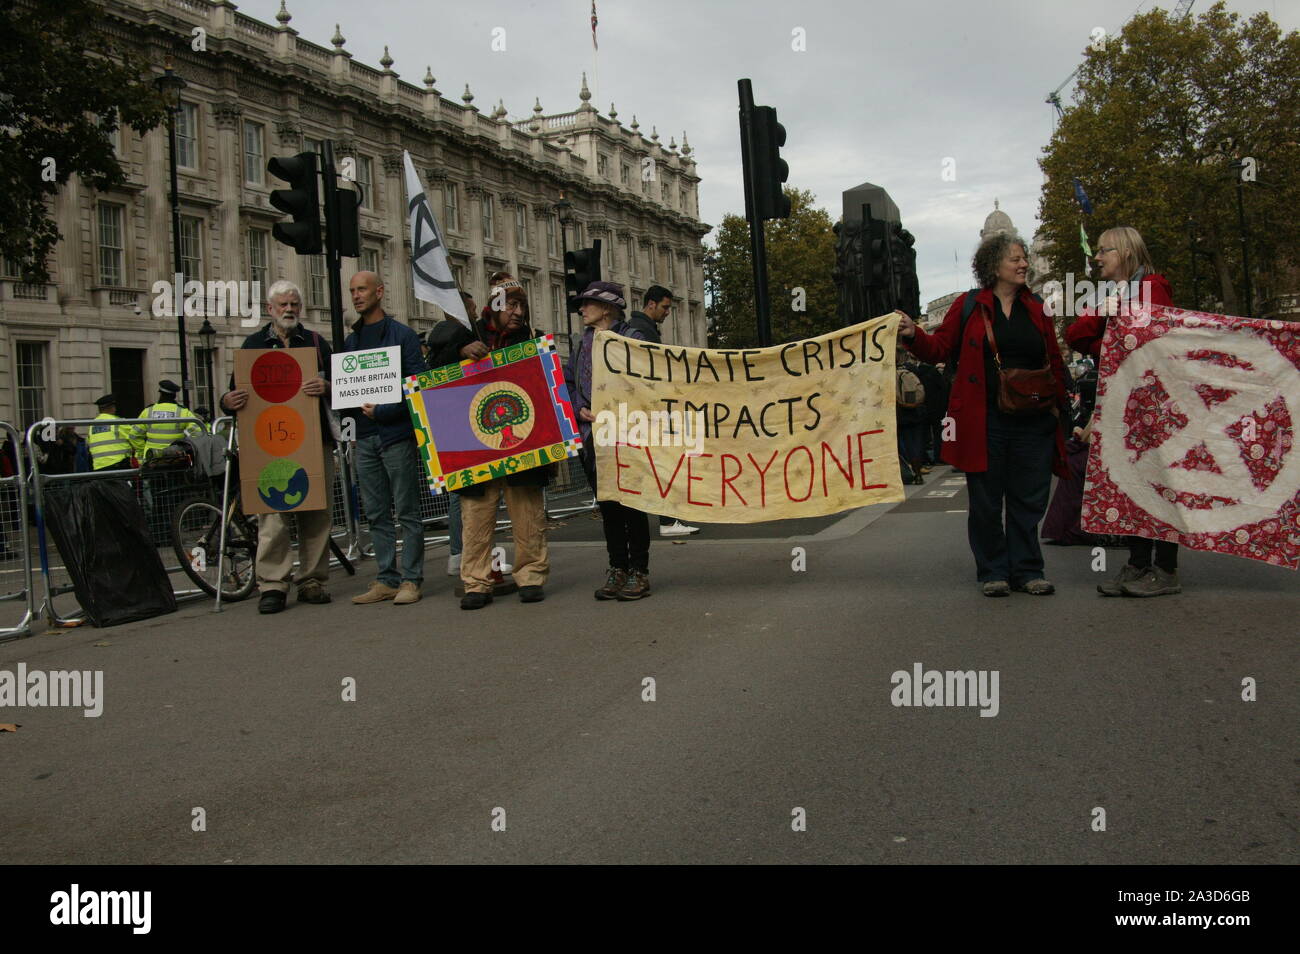 Londra, Regno Unito. 07 ott 2019, estinzione della ribellione portare il centro di Londra da un fermo, per evidenziare il cambiamento climatico. © Martin Foskett/Knelstrom Ltd/Alamy Live News Foto Stock